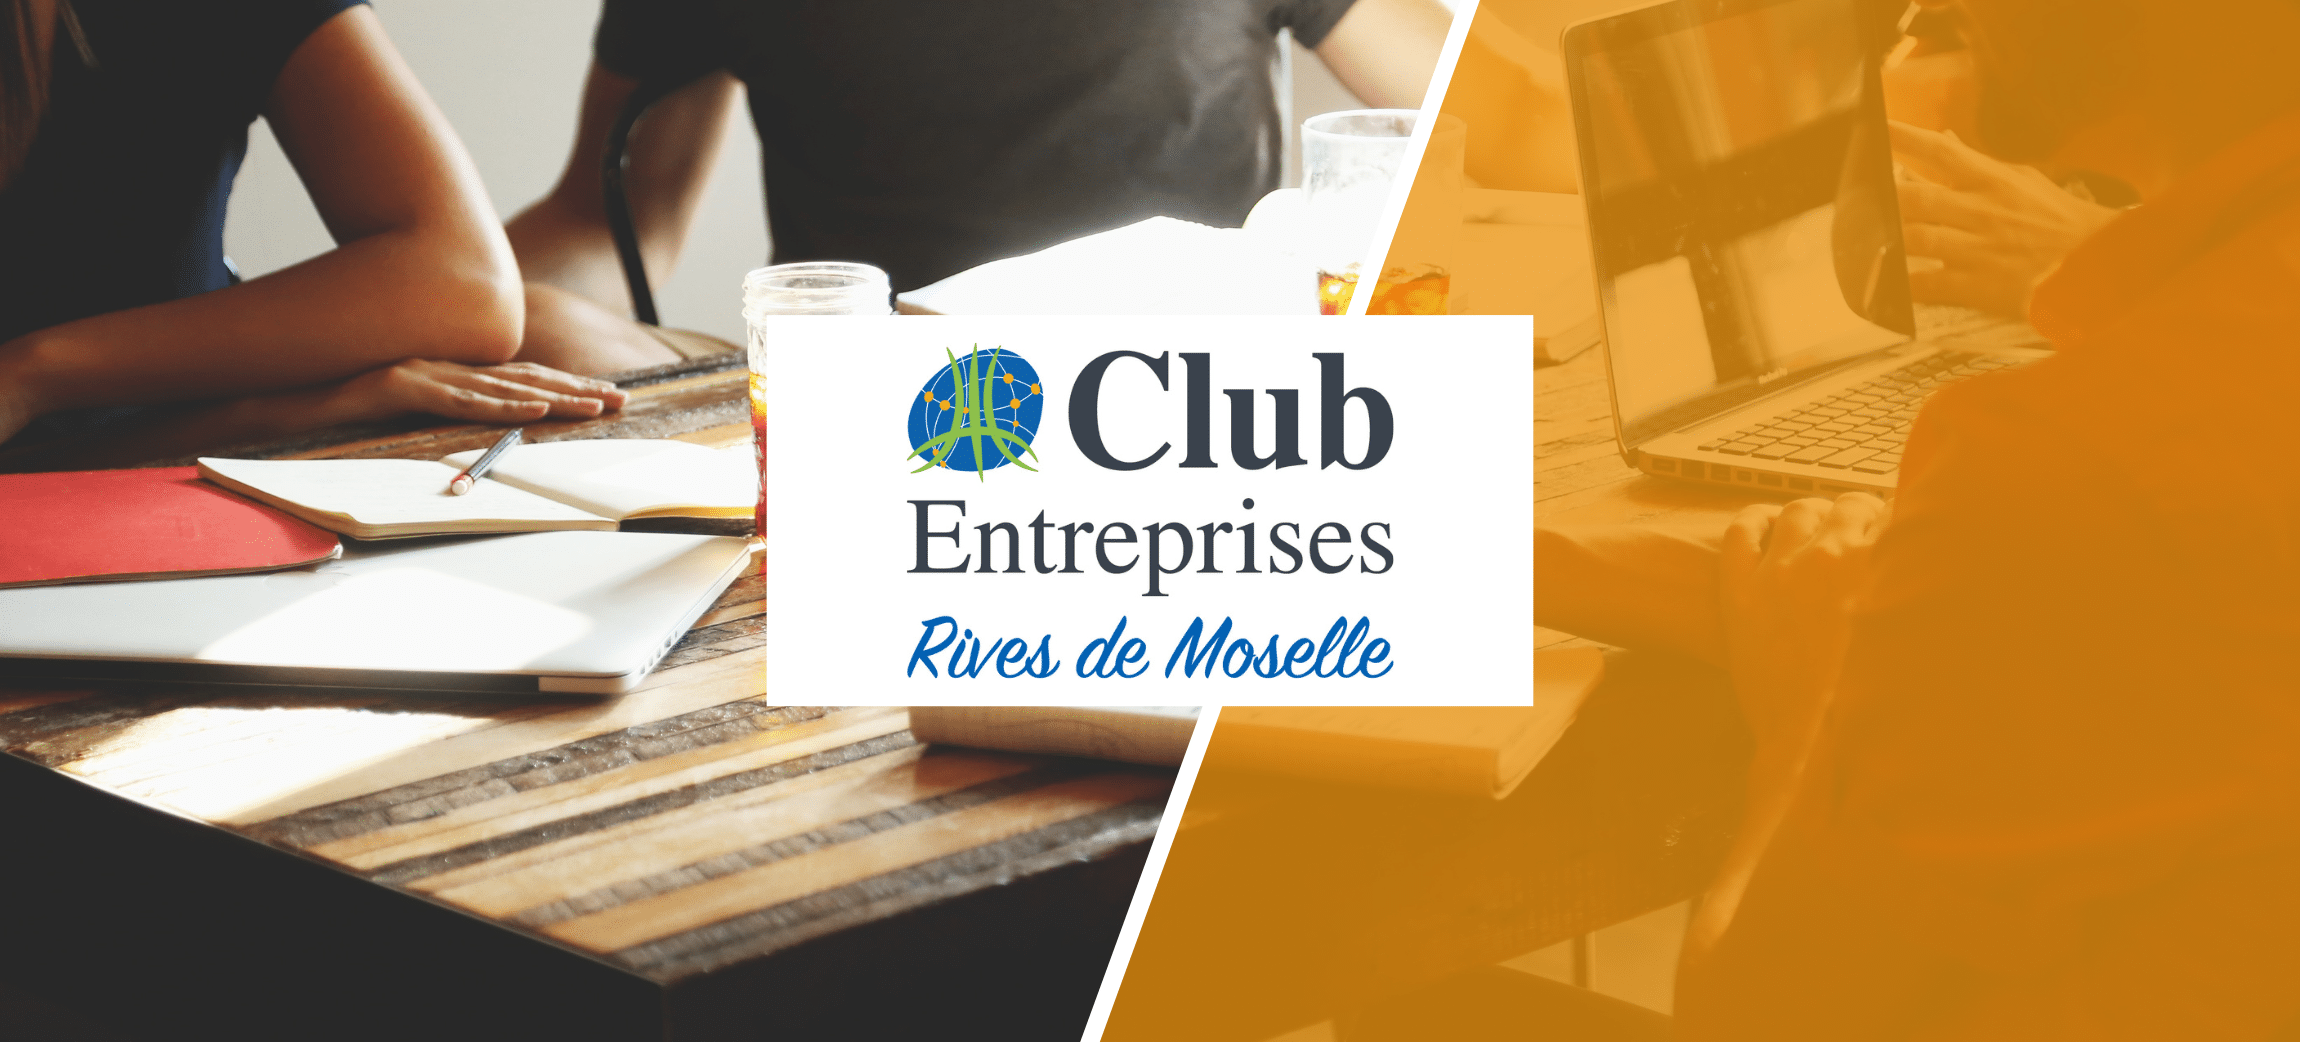 AfterWork #5 Club Entreprises Rives de Moselle